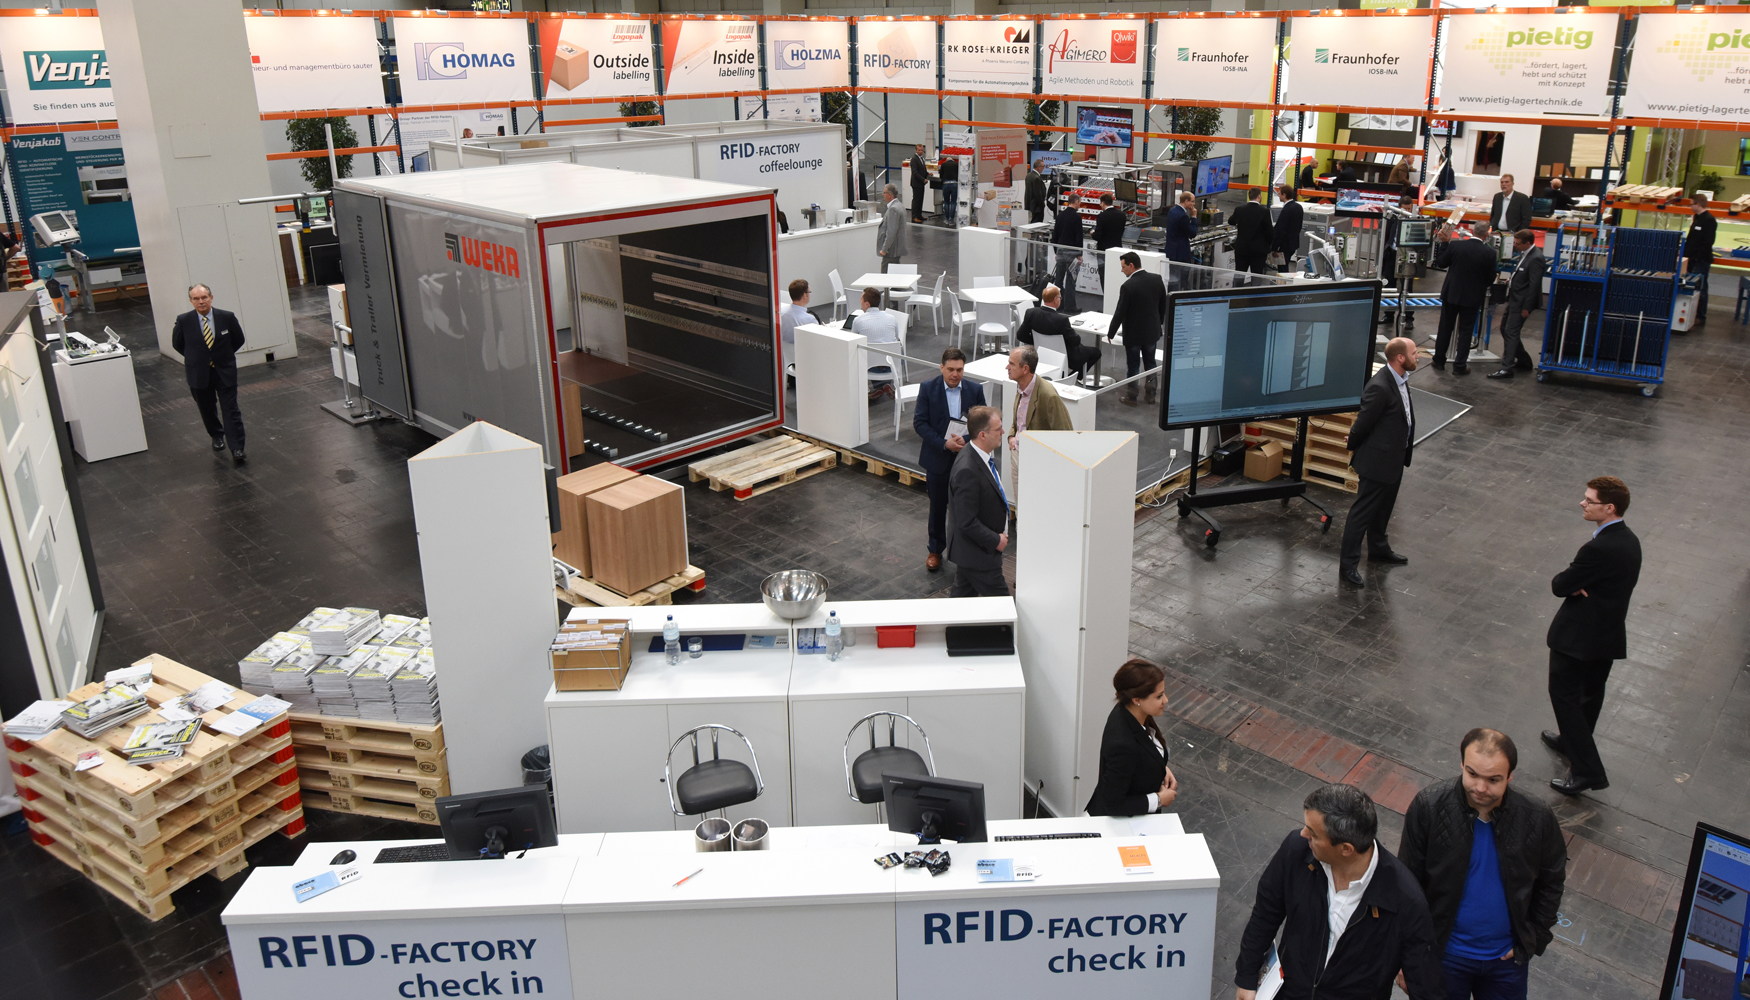 RFID-Factory se distribuye en una superficie total de 600 metros cuadrados del Pabelln 11